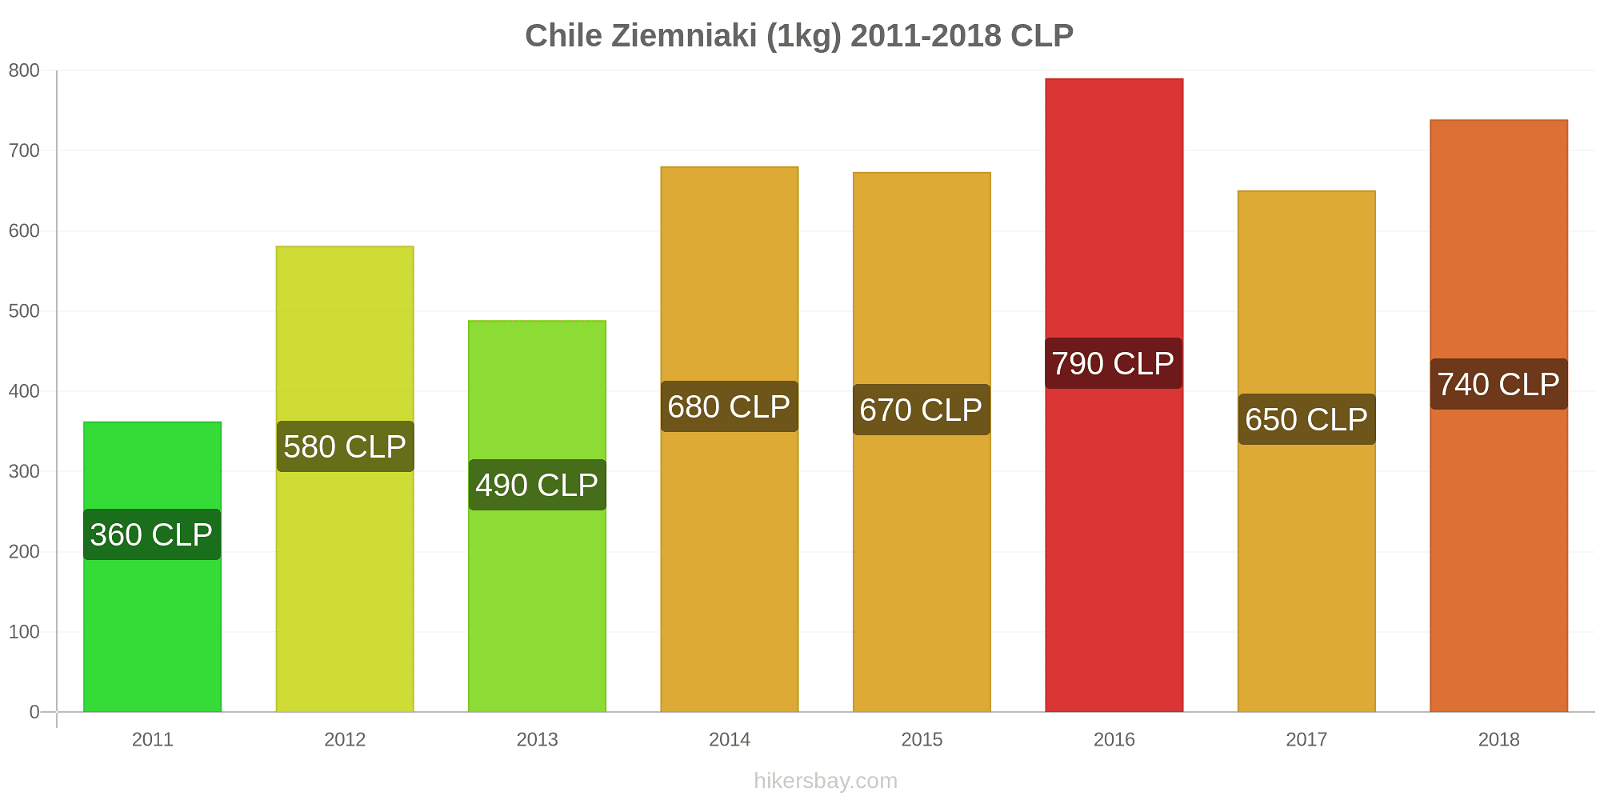 Chile zmiany cen Ziemniaki (1kg) hikersbay.com